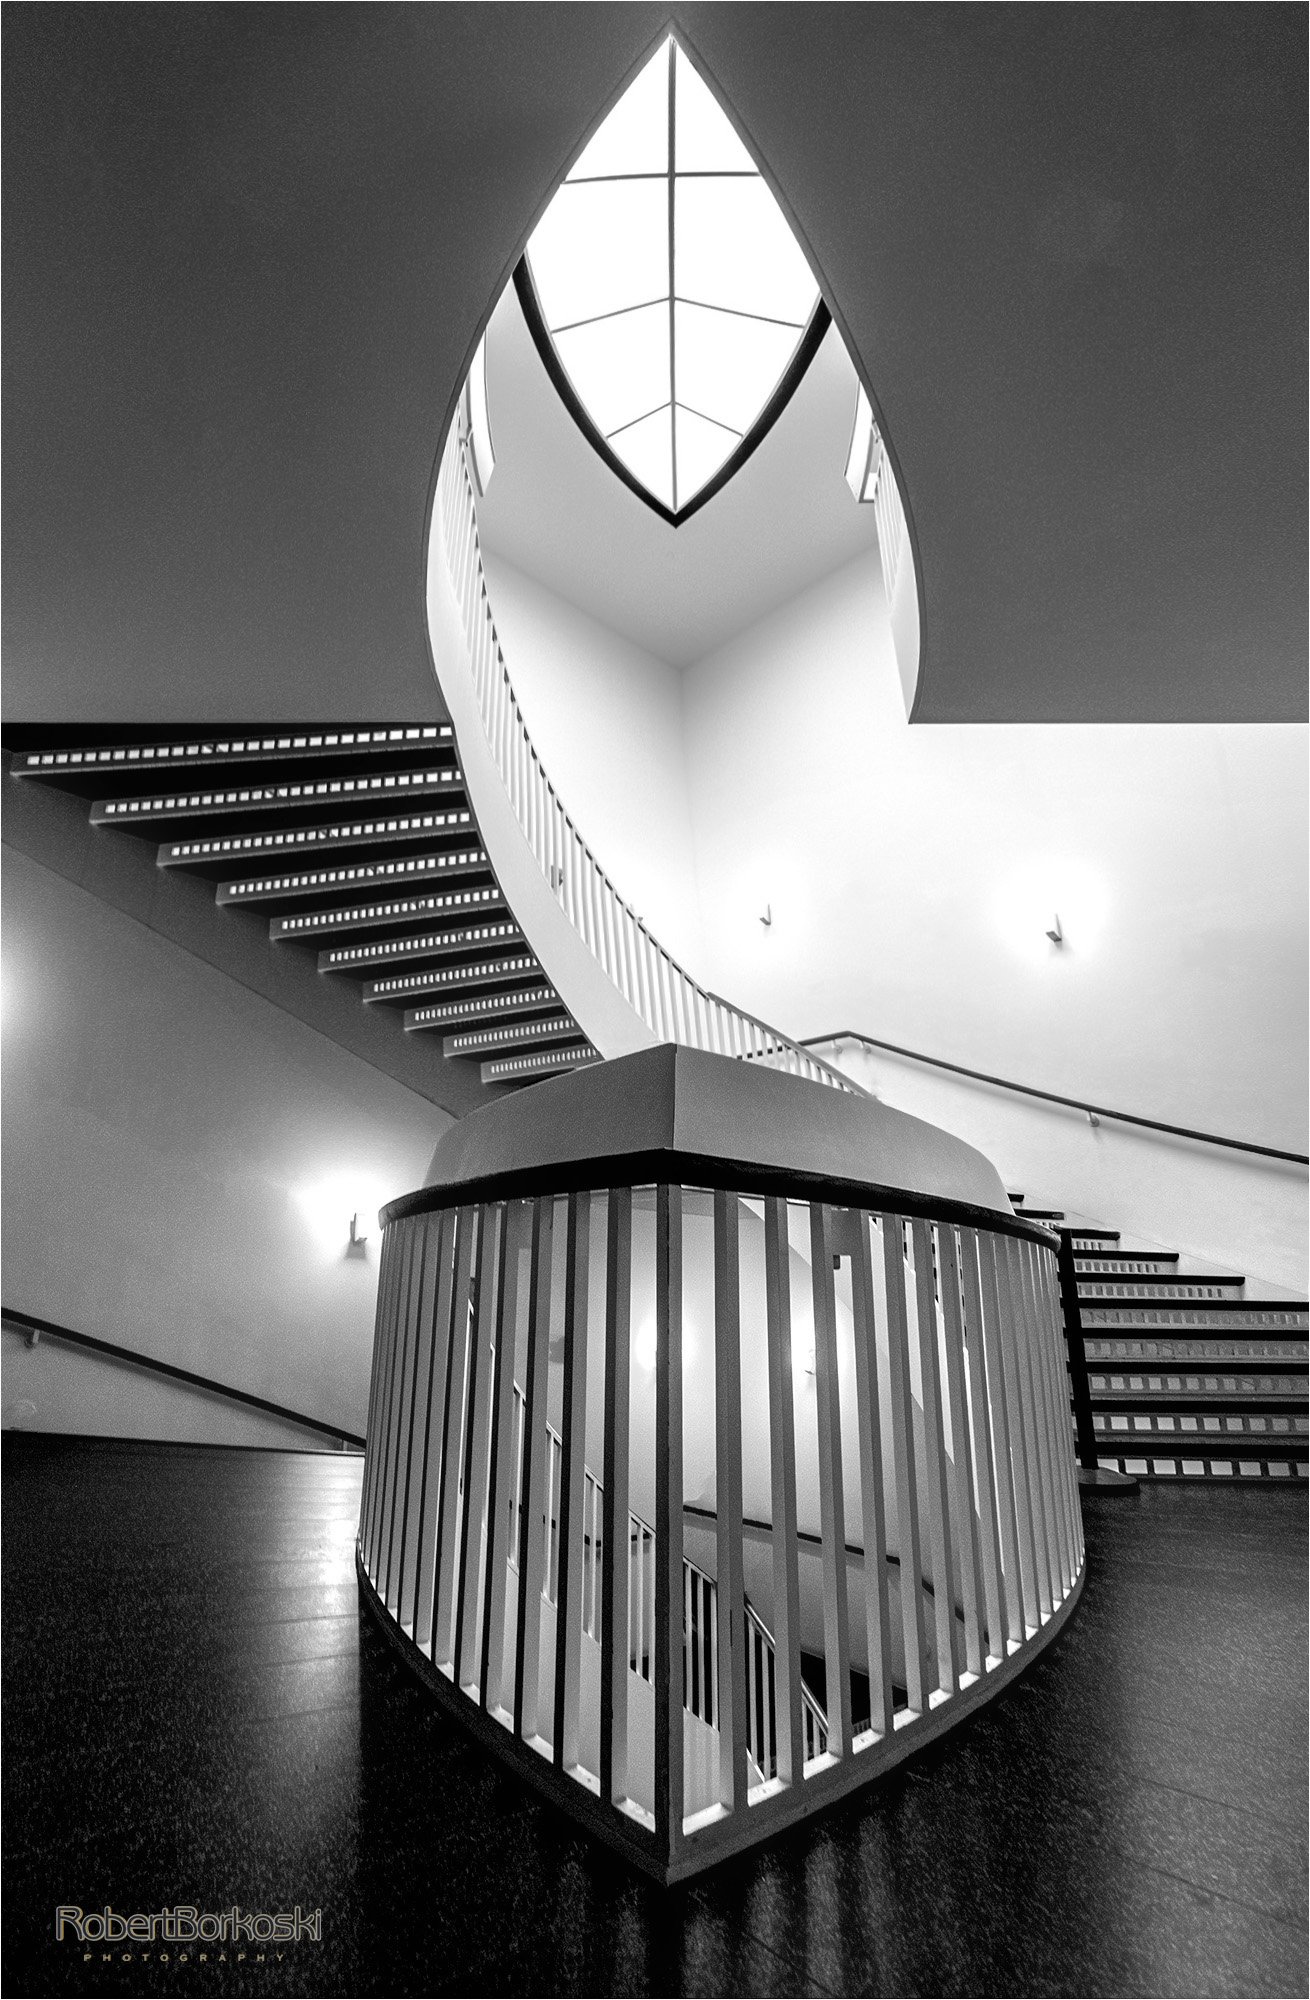 Robert Borkoski - Stairway 2 Heaven